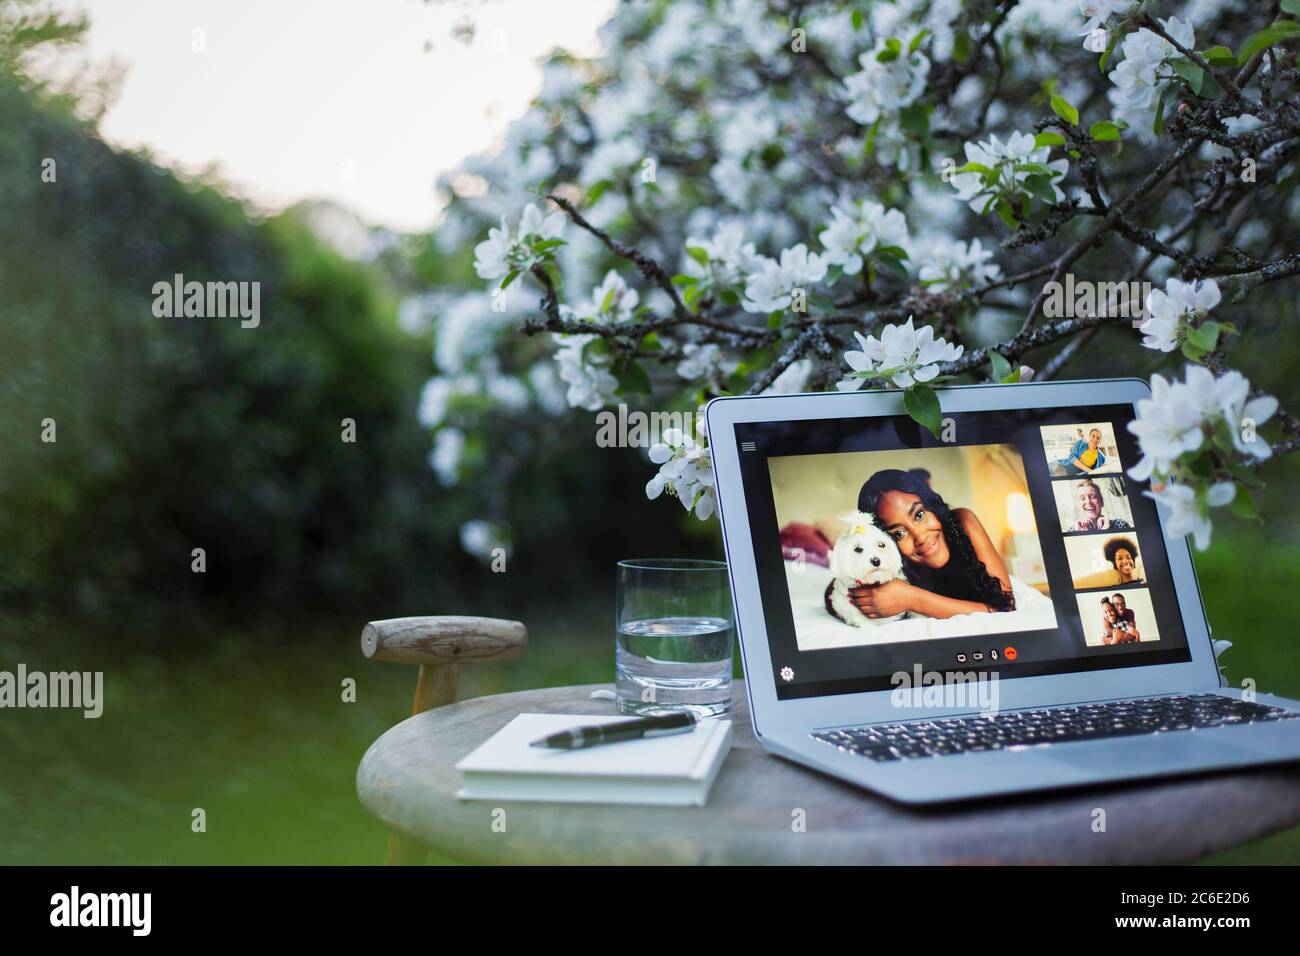 Chat video degli amici sullo schermo del computer portatile in un tranquillo giardino Foto Stock